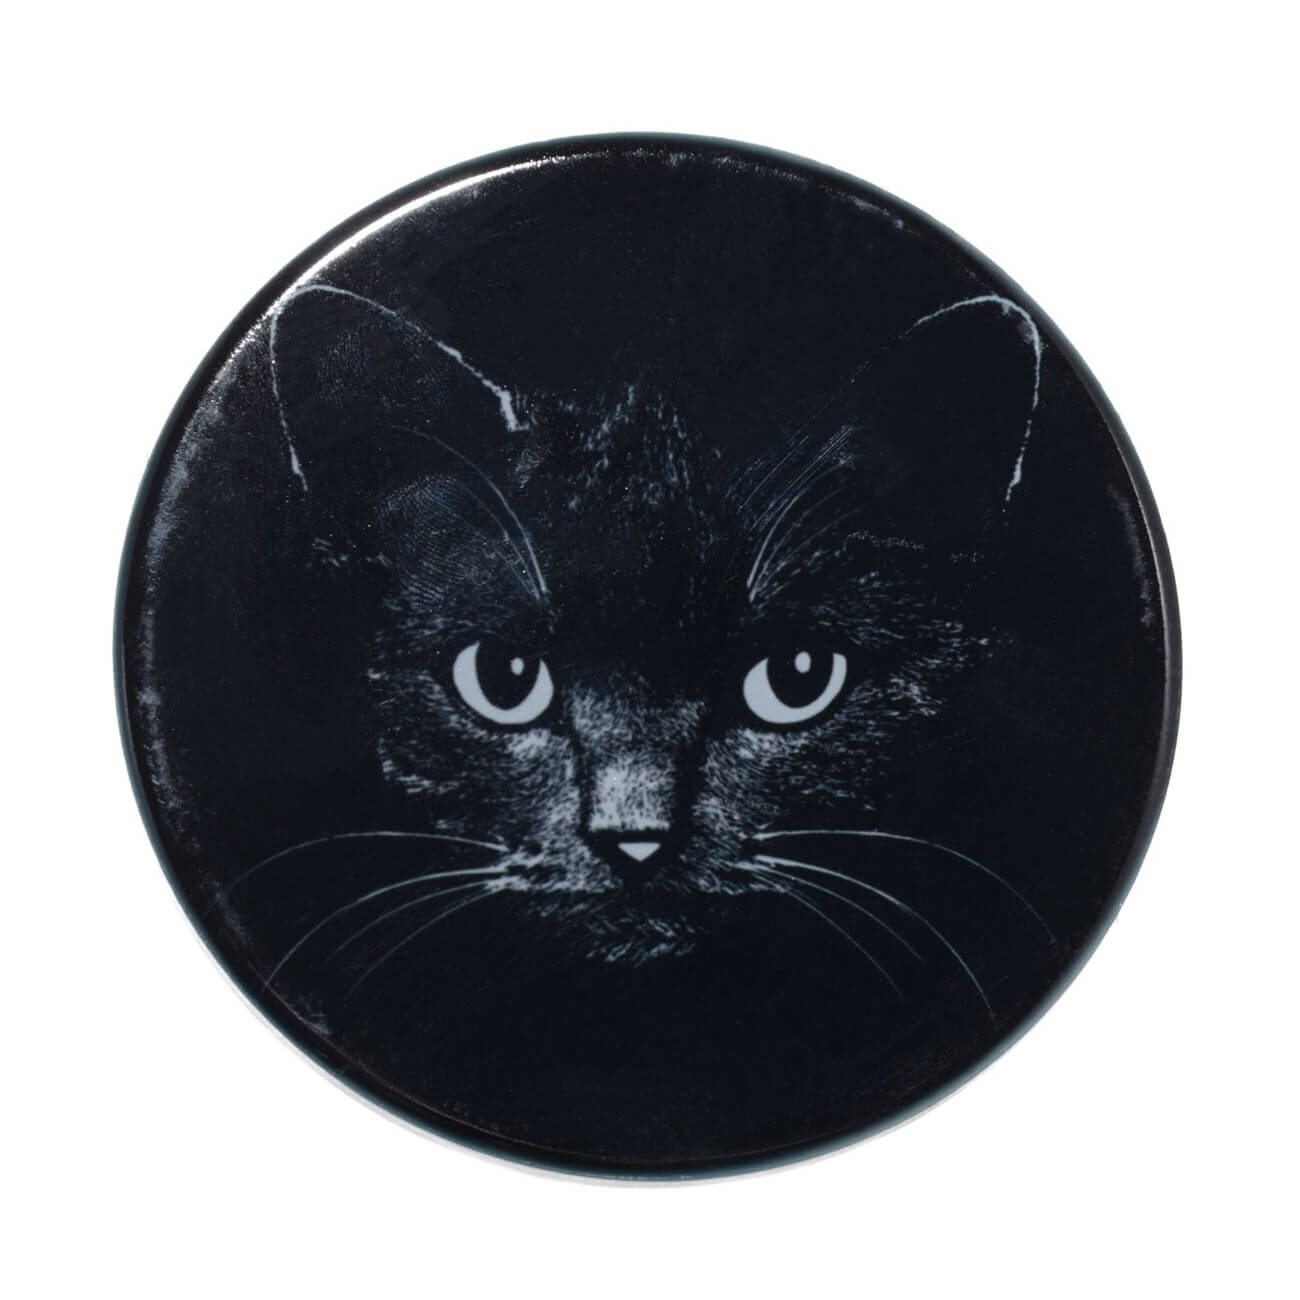 Подставка под кружку, 11x11 см, керамика/пробка, круглая, черная, Ночной кот, Cat night подставка под горячее starry night 10×10 см